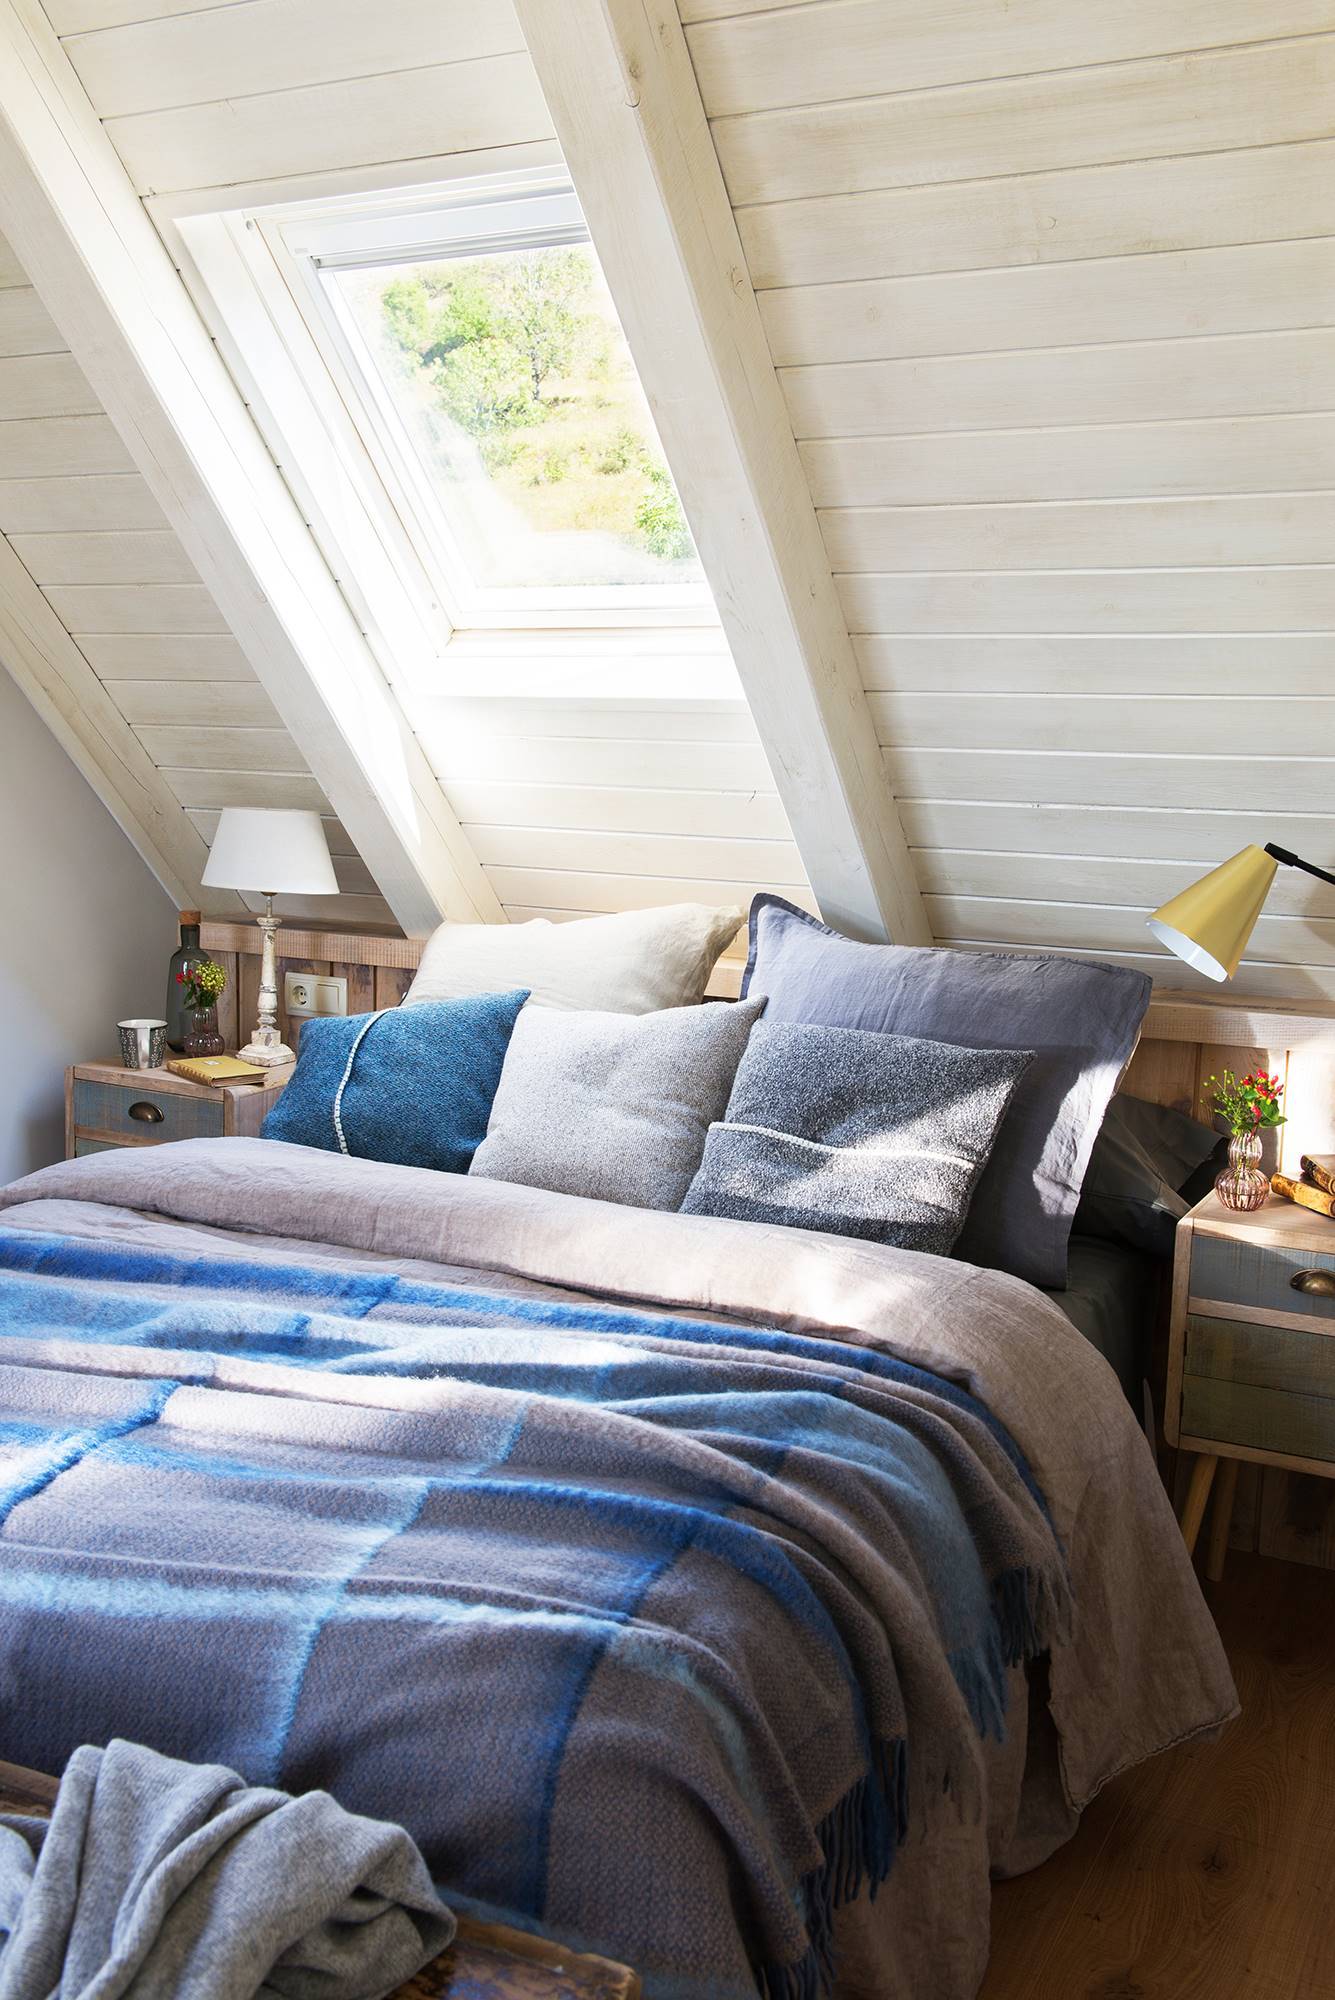 Dormitorio buhardilla ropa de cama azul y gris rústico